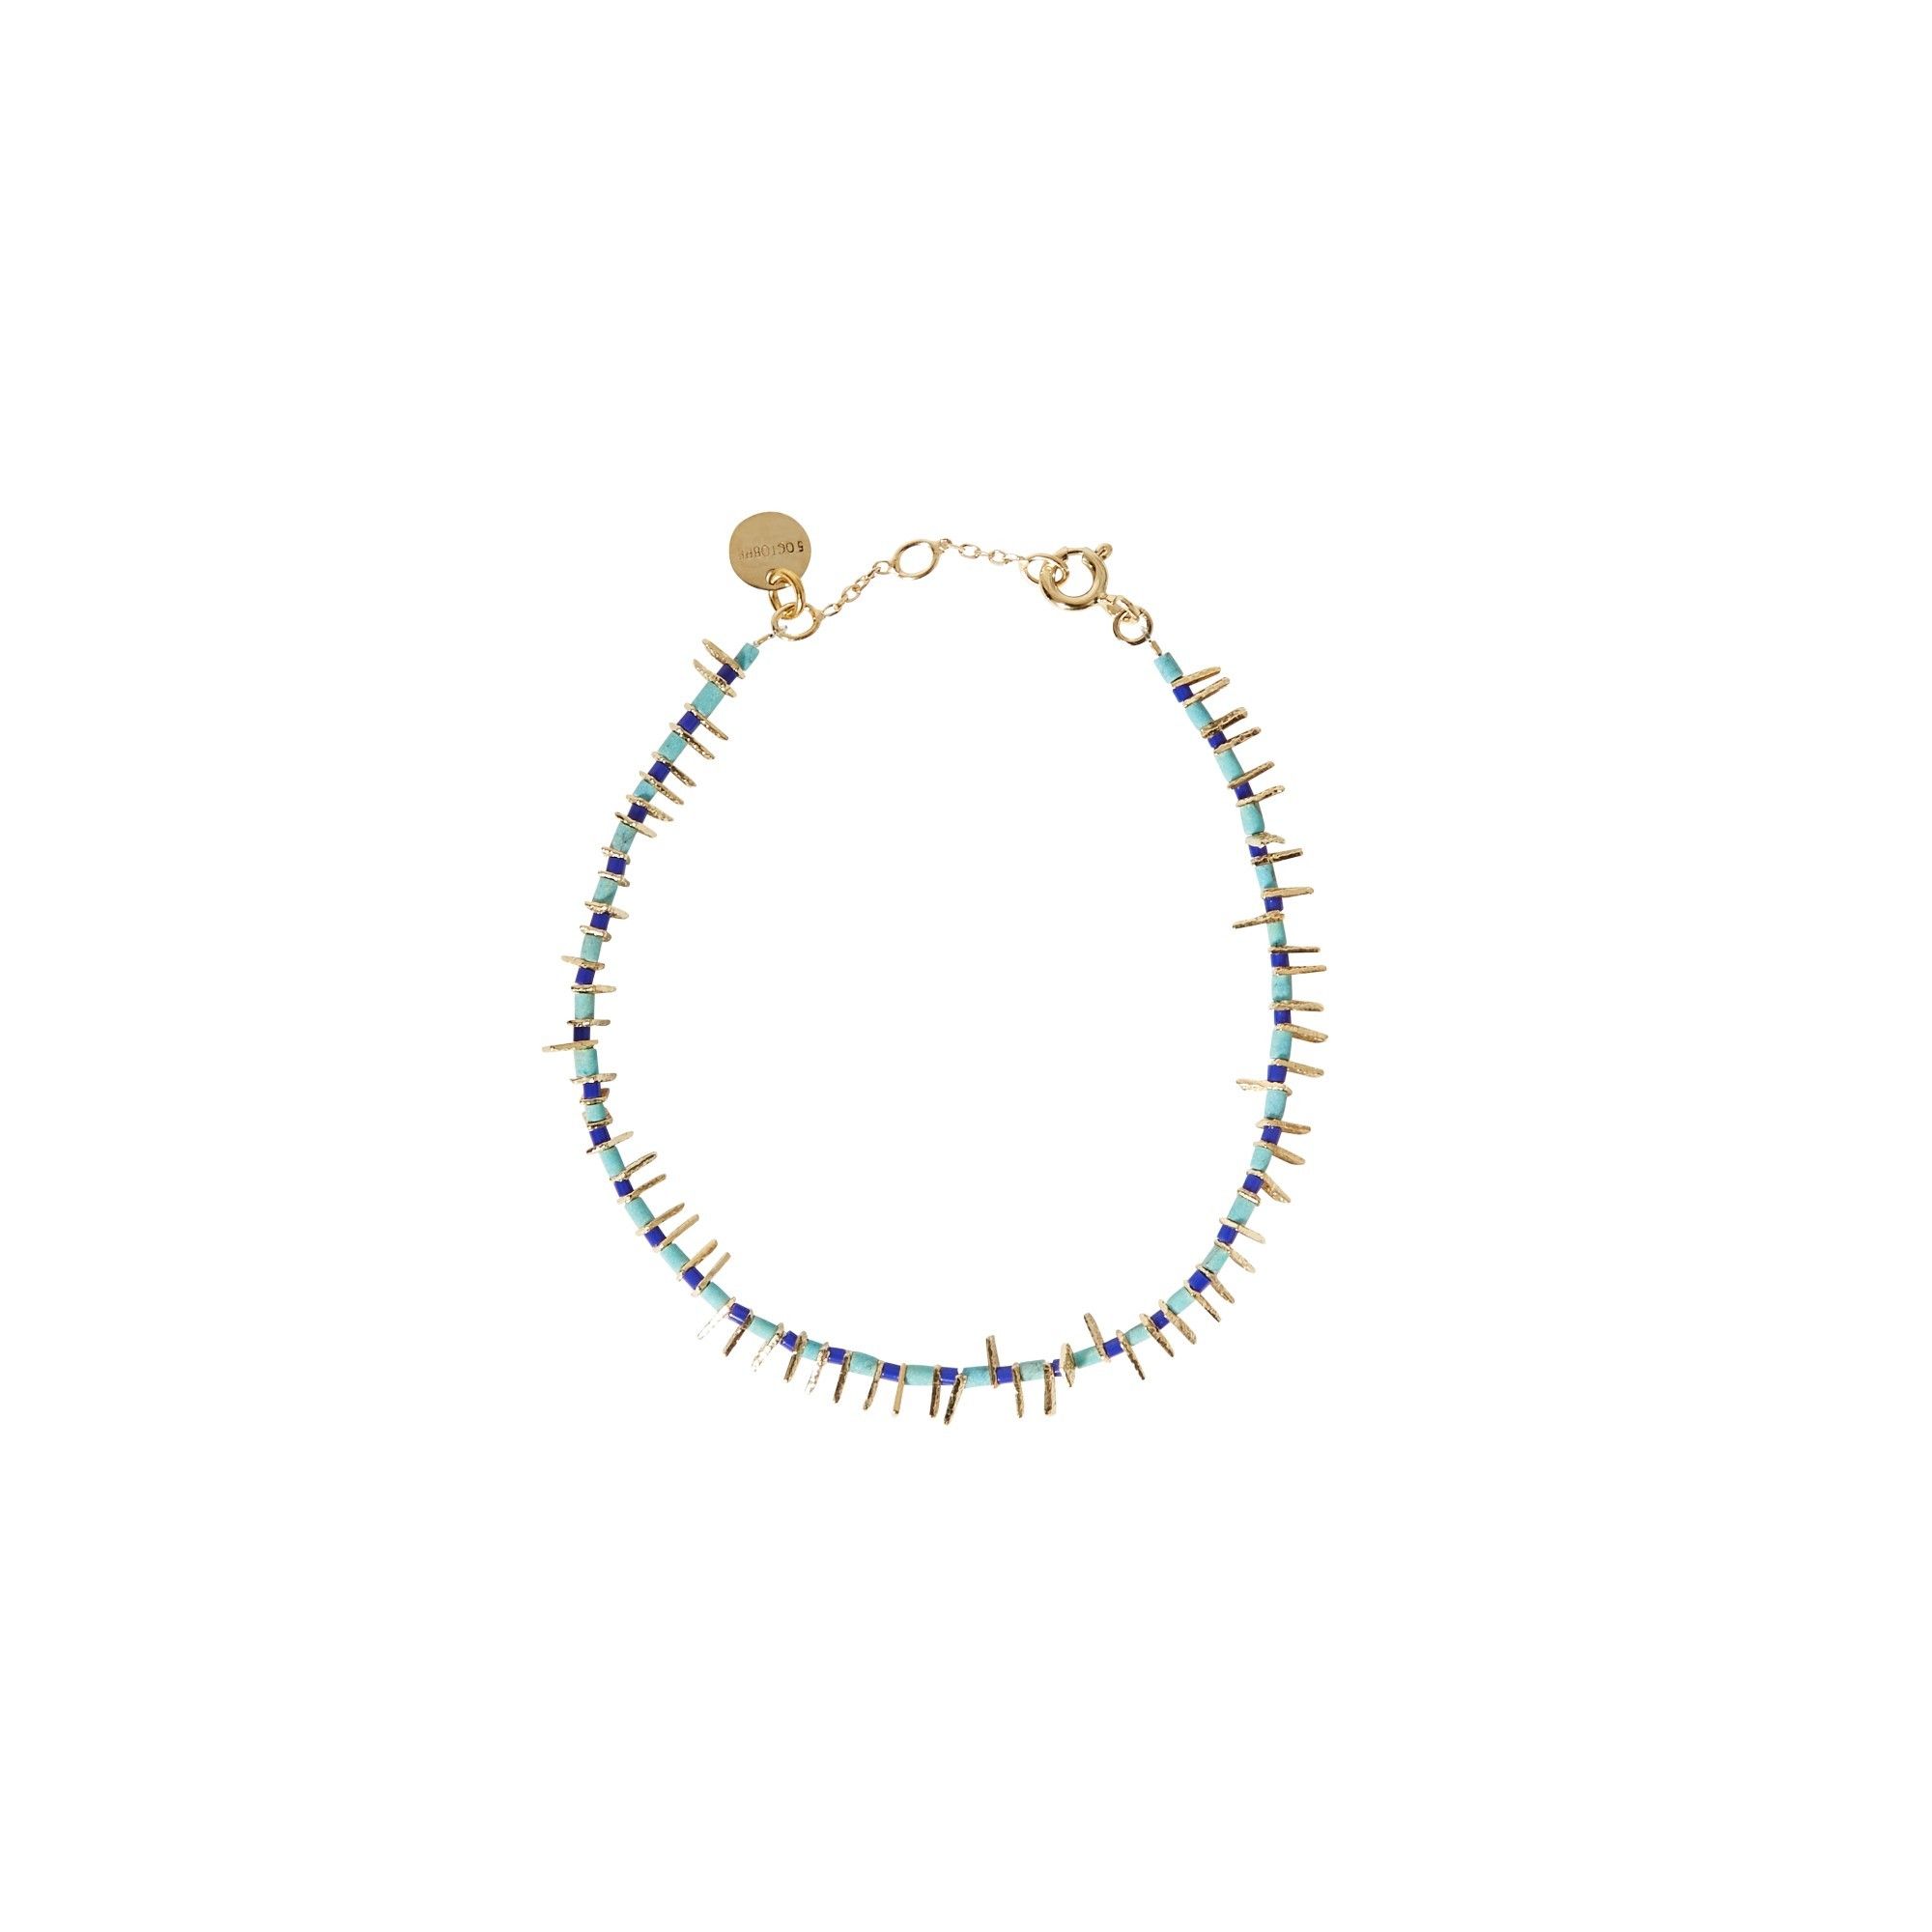 5 Octobre - Bracelet Boy - Femme - Bleu turquoise